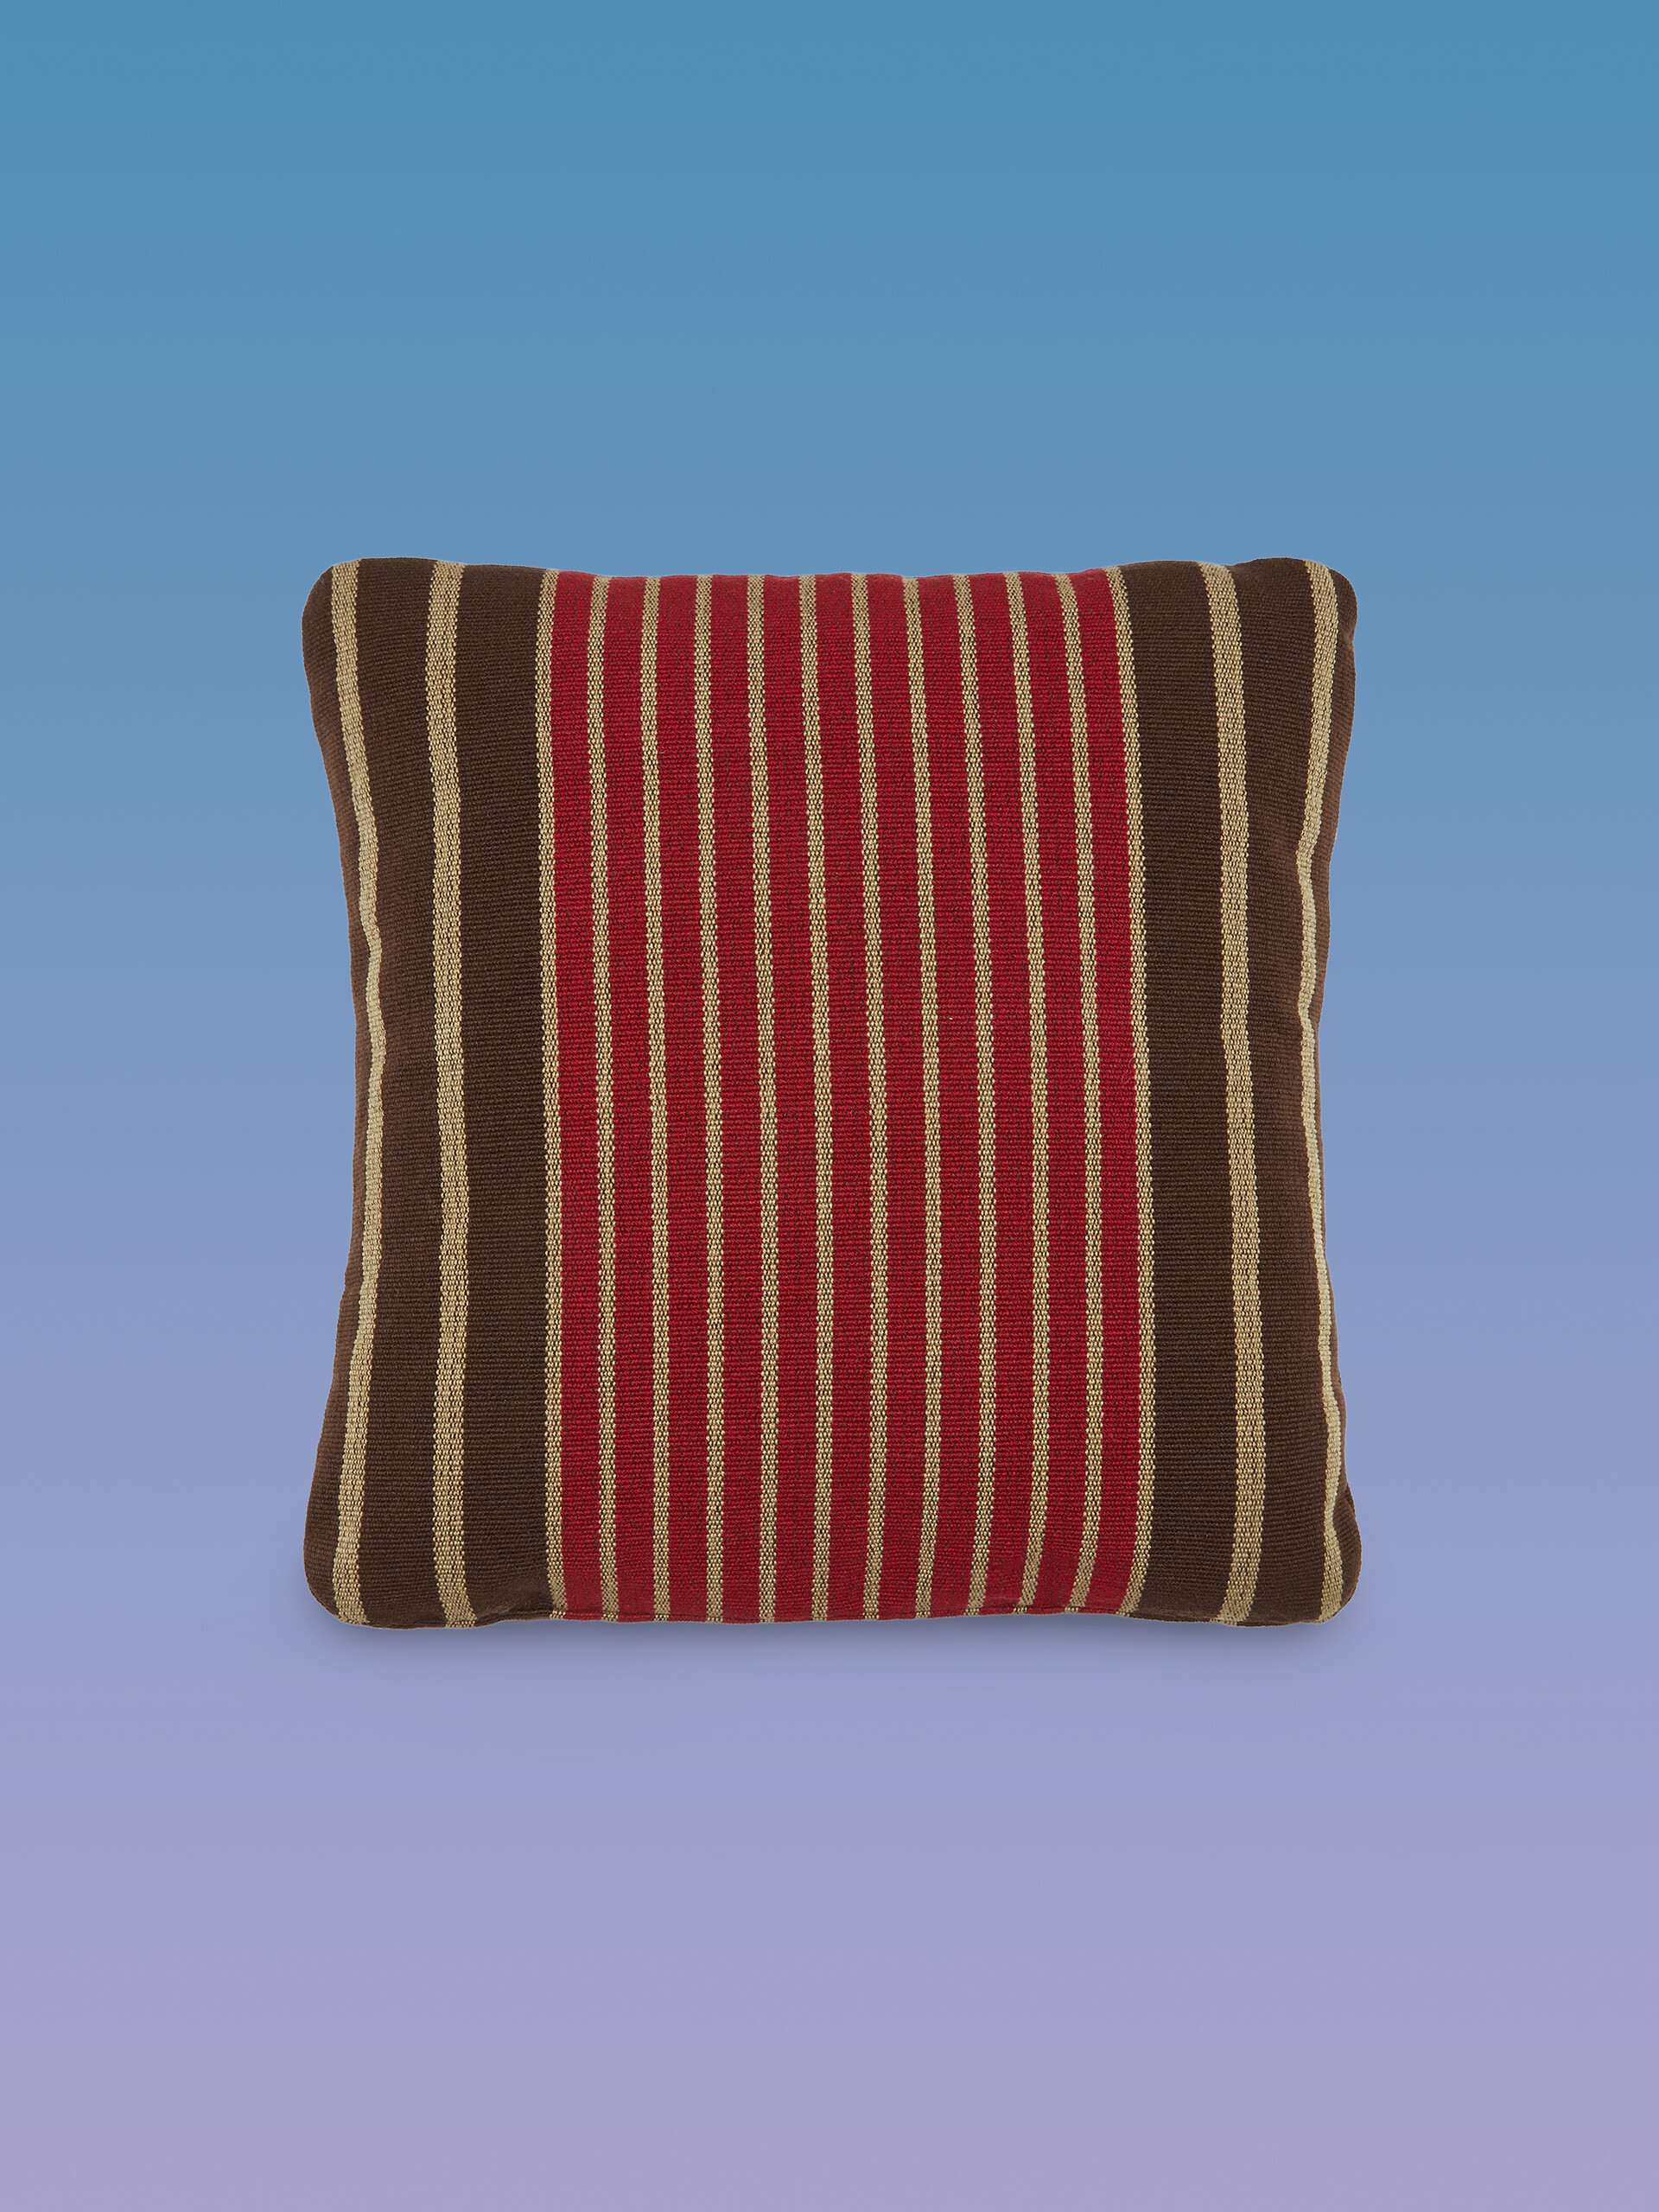 Cuscino quadrato MARNI MARKET in tessuto marrone multicolor - Arredamento - Image 1